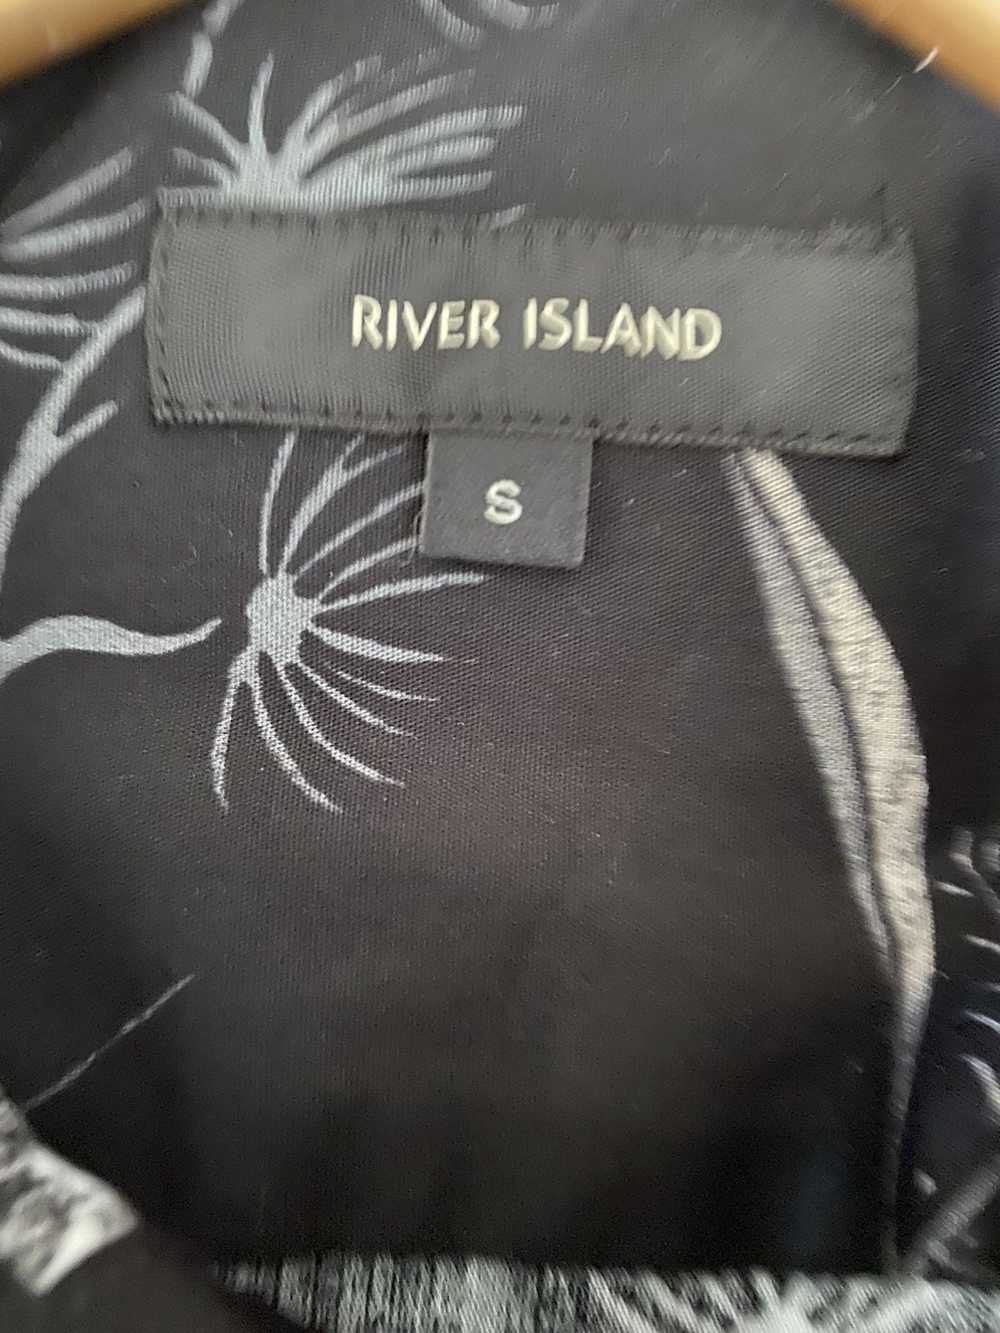 River Island Floral shirt black x vintage aesthet… - image 3